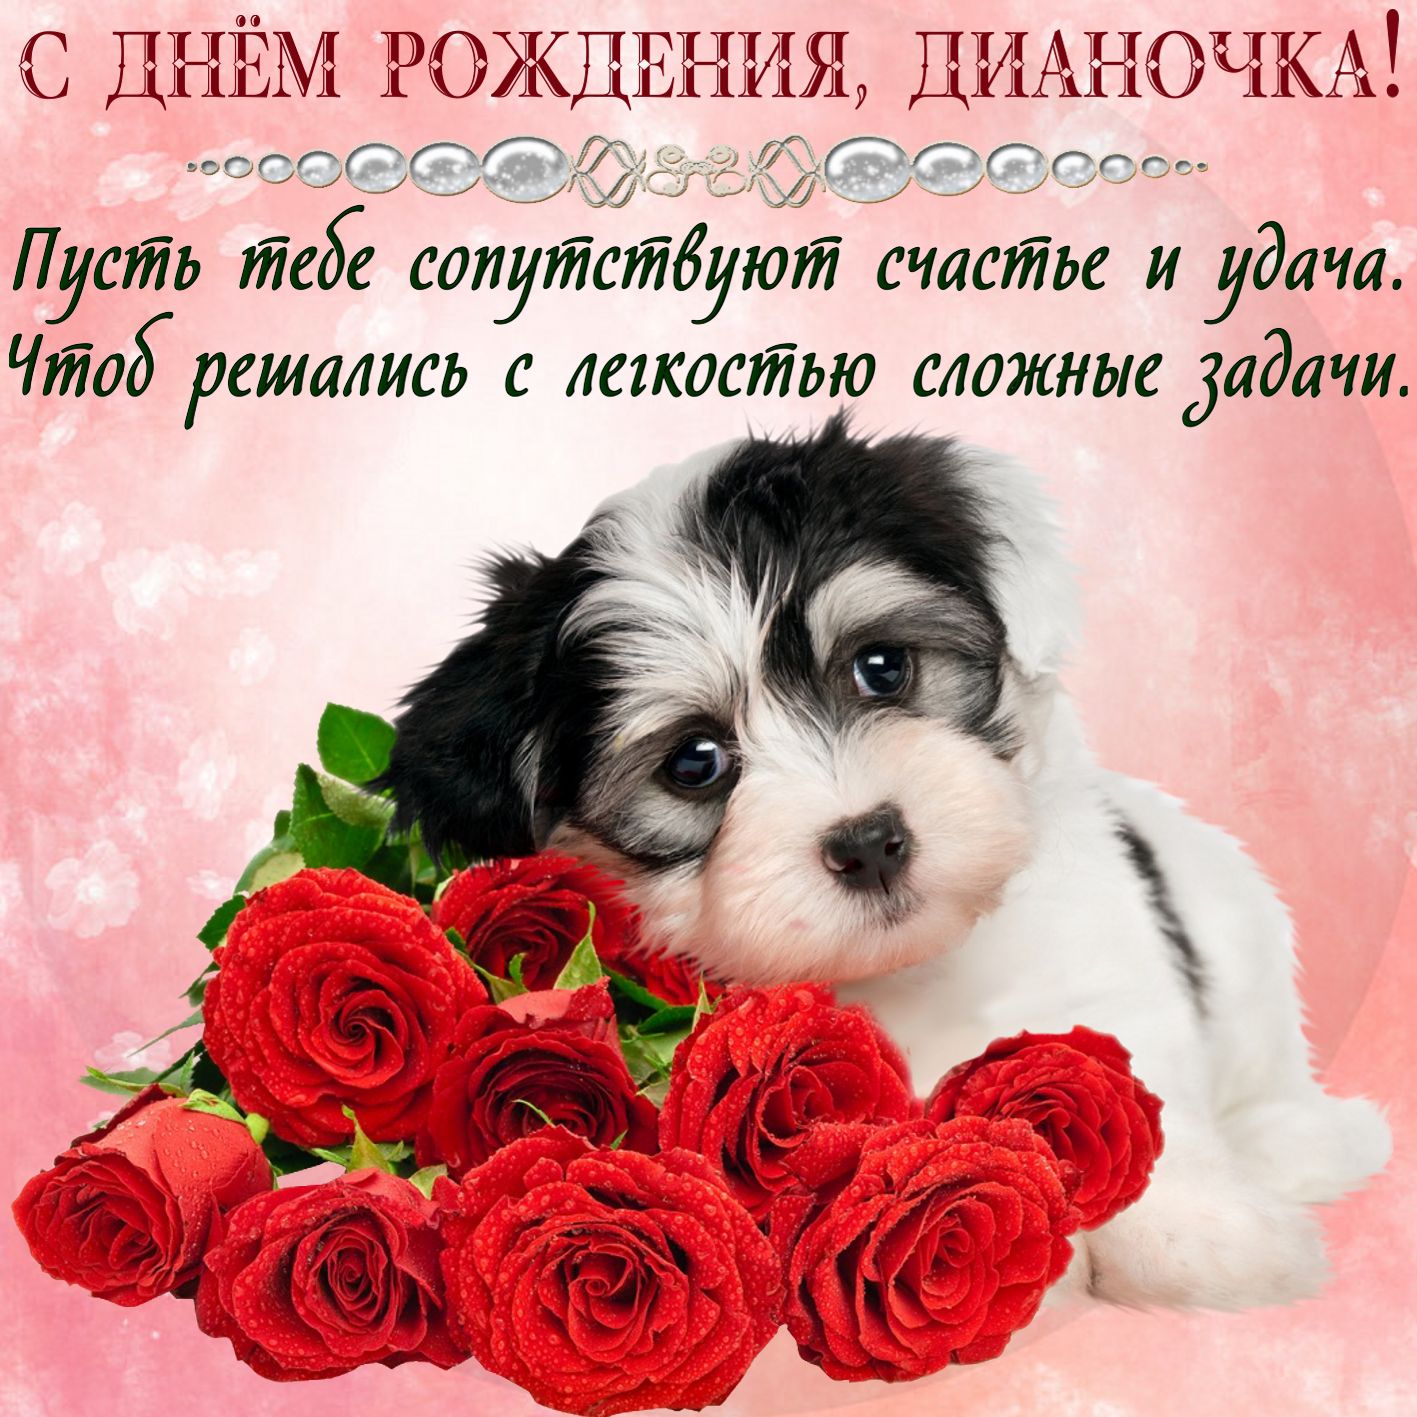 Открытка с Днем рождения - милый пёсик с красными розами для Дианочки